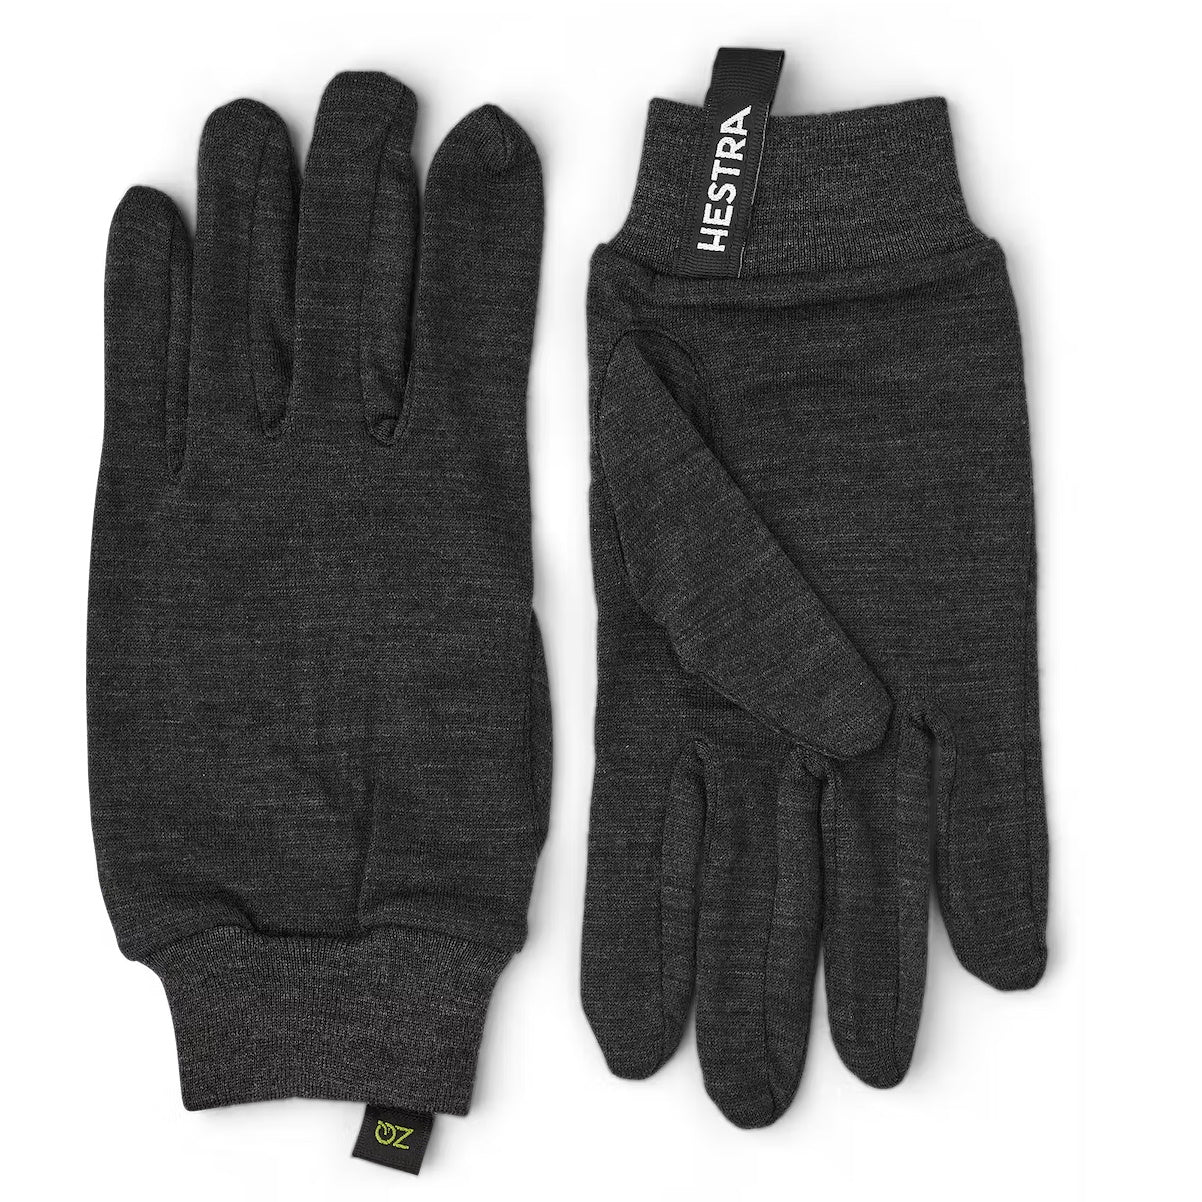 Hestra Merino wool liner handschoenen charcoal - Damplein 9 SKI & Mode